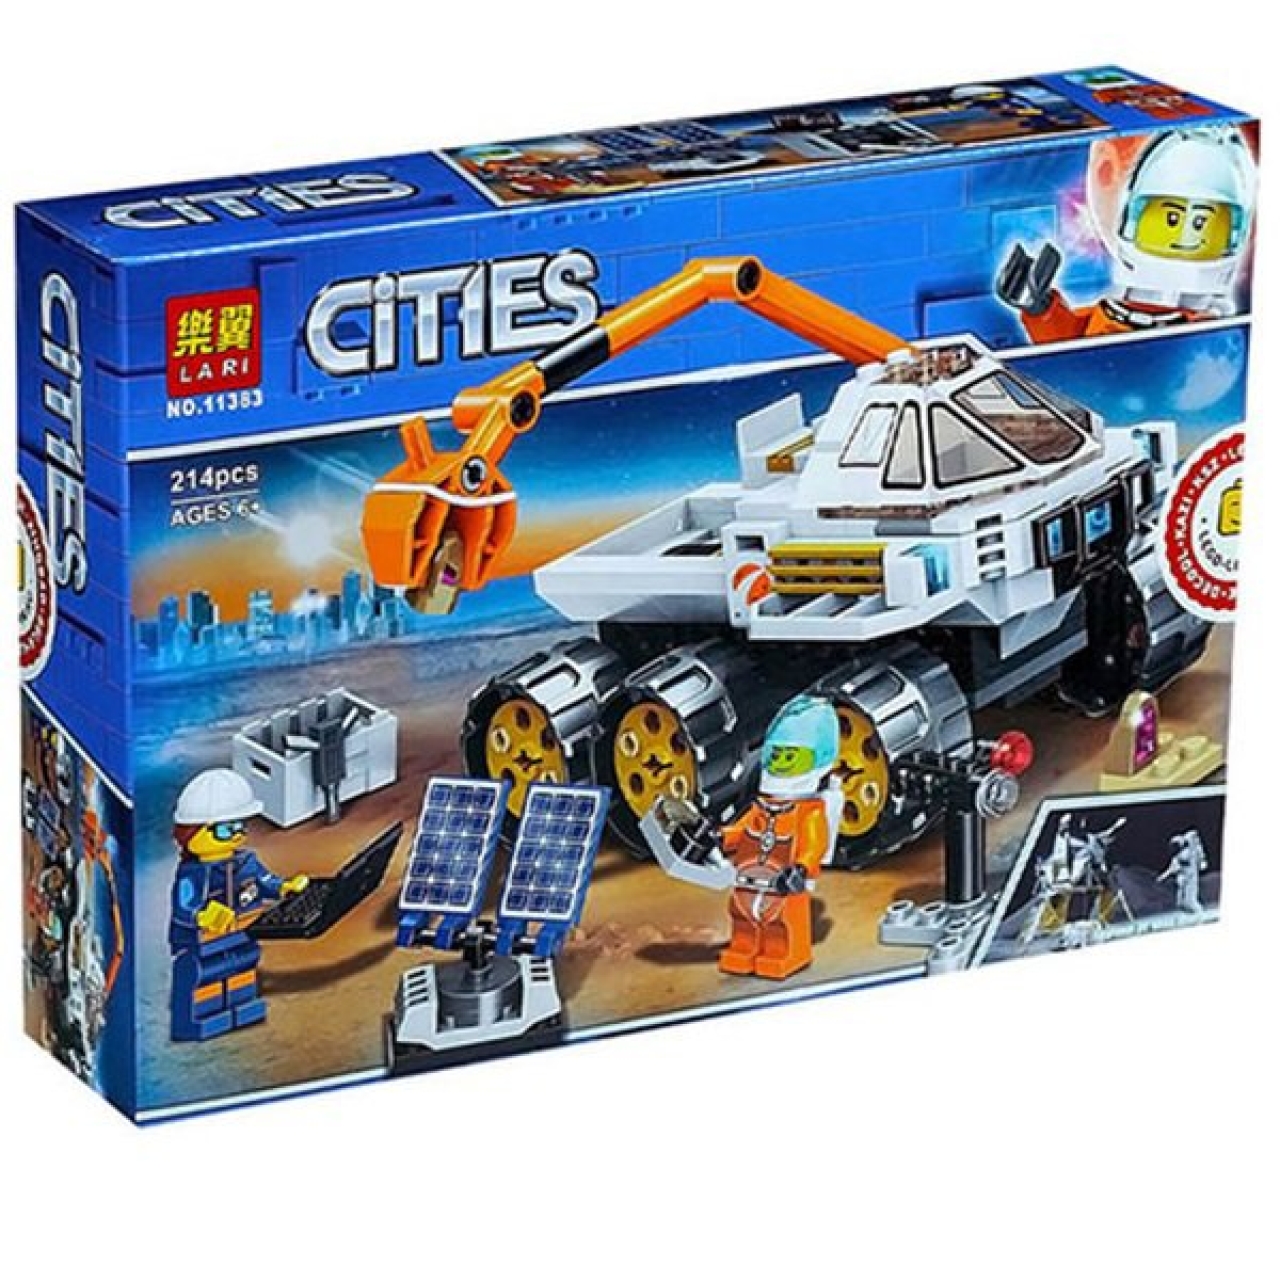 ساختنی مدل لاری Cities کد 11383